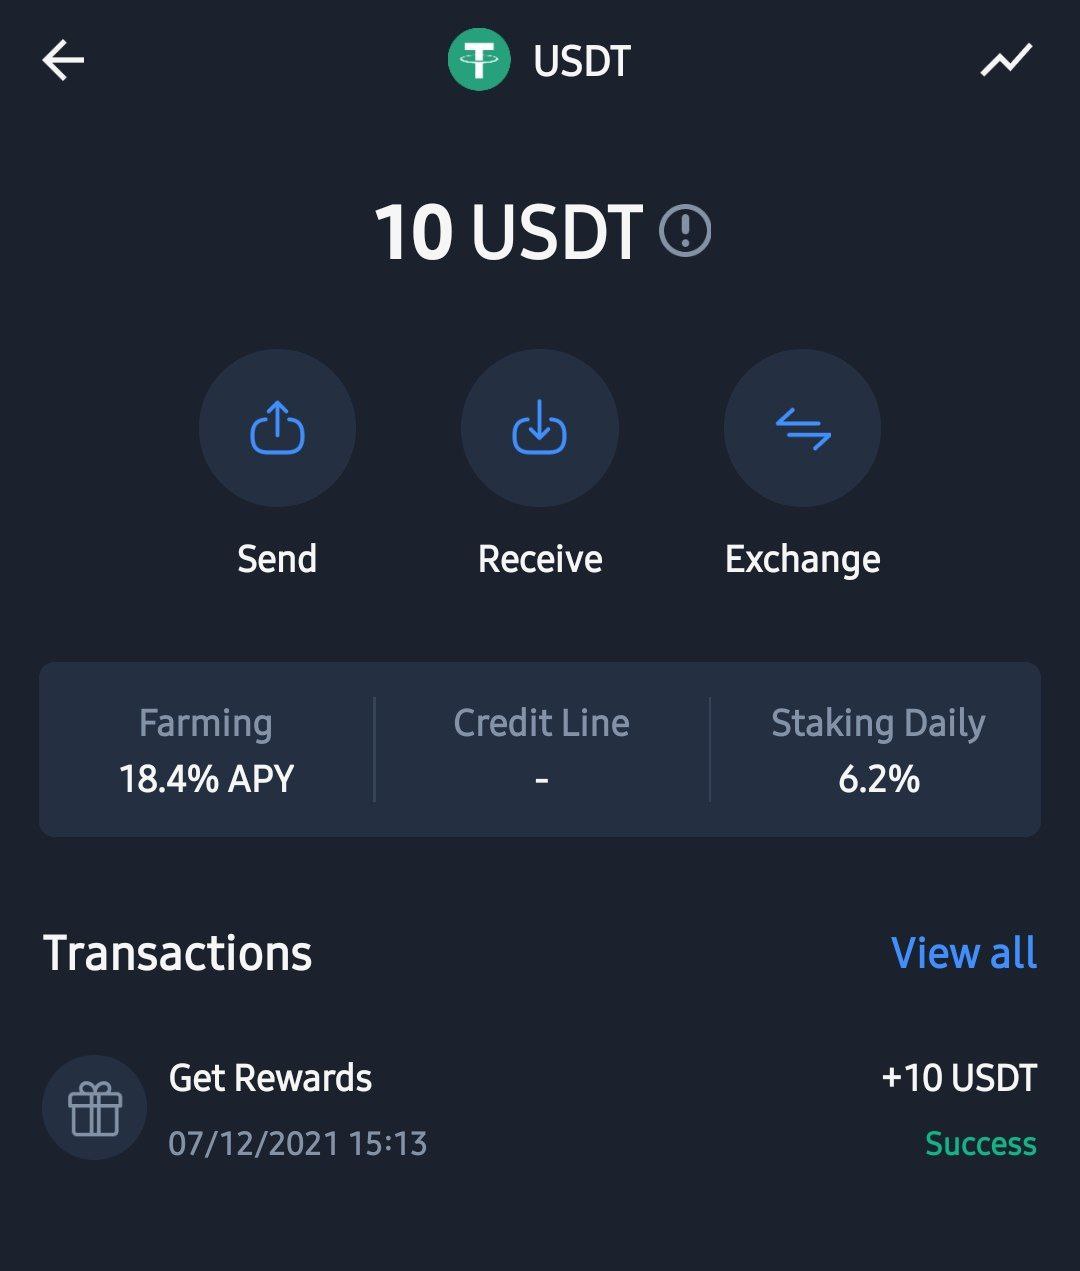 GoOnus Exchange Free USDT Offer